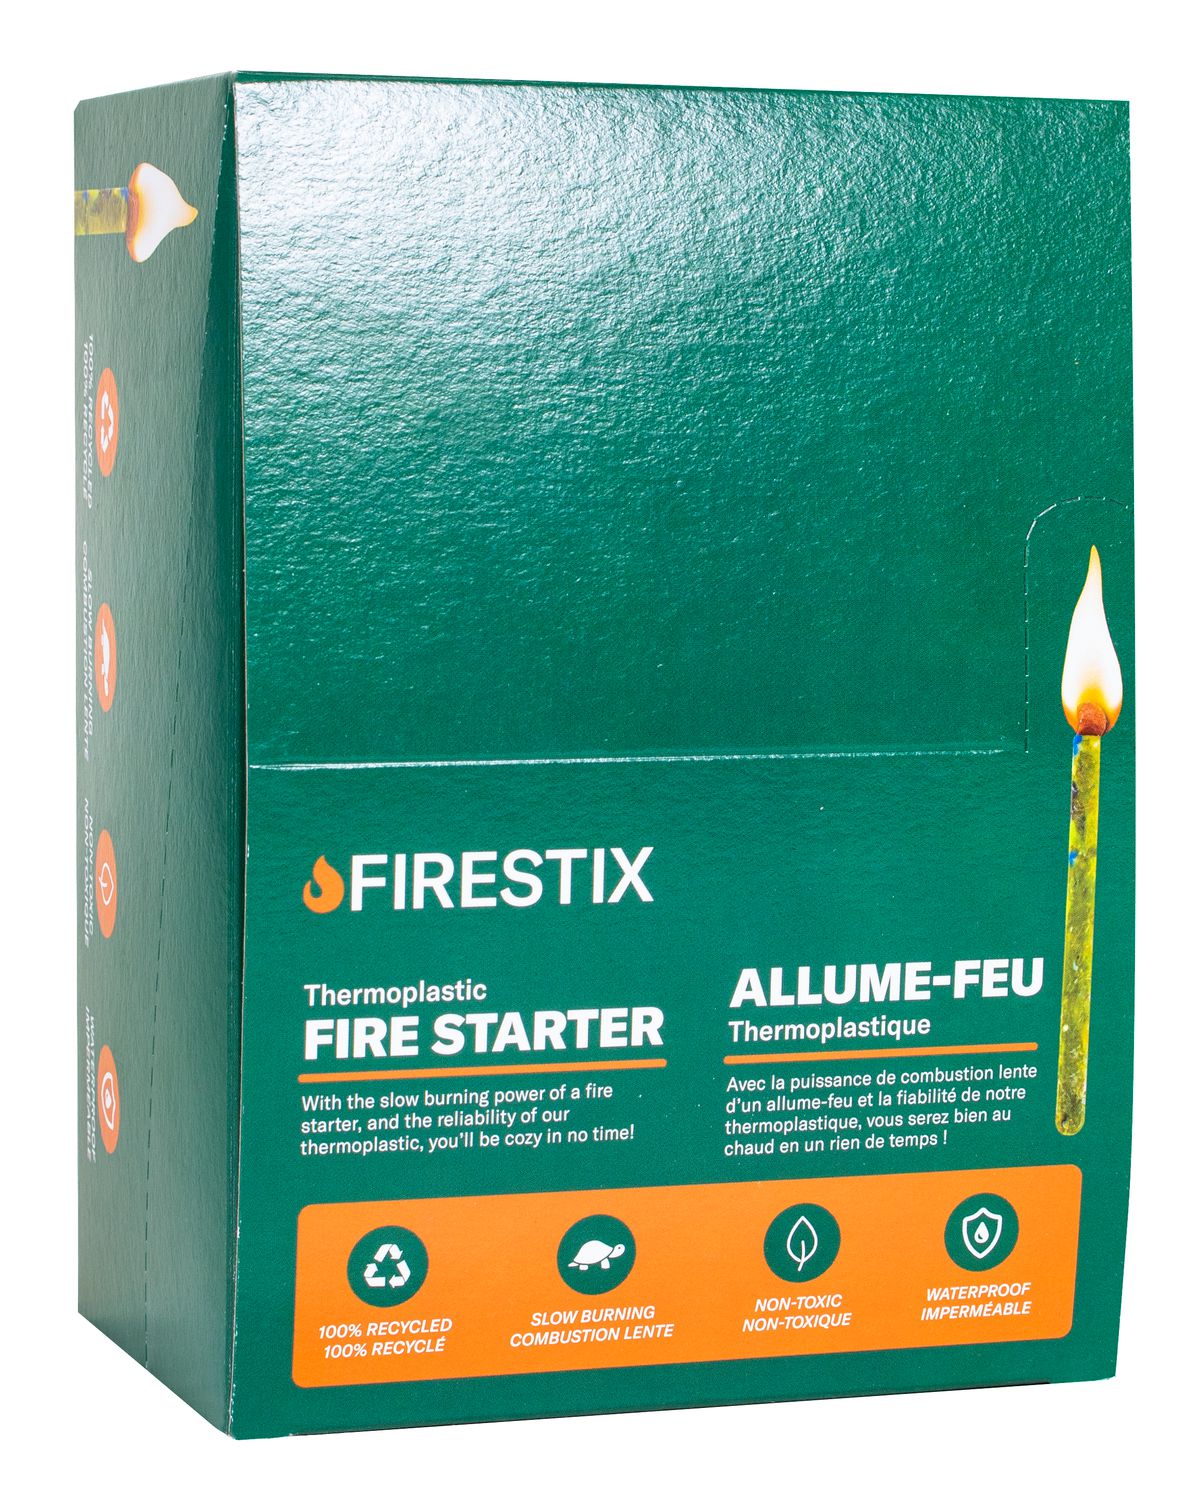 Allumettes allume-feu Fire Stix - Olympia